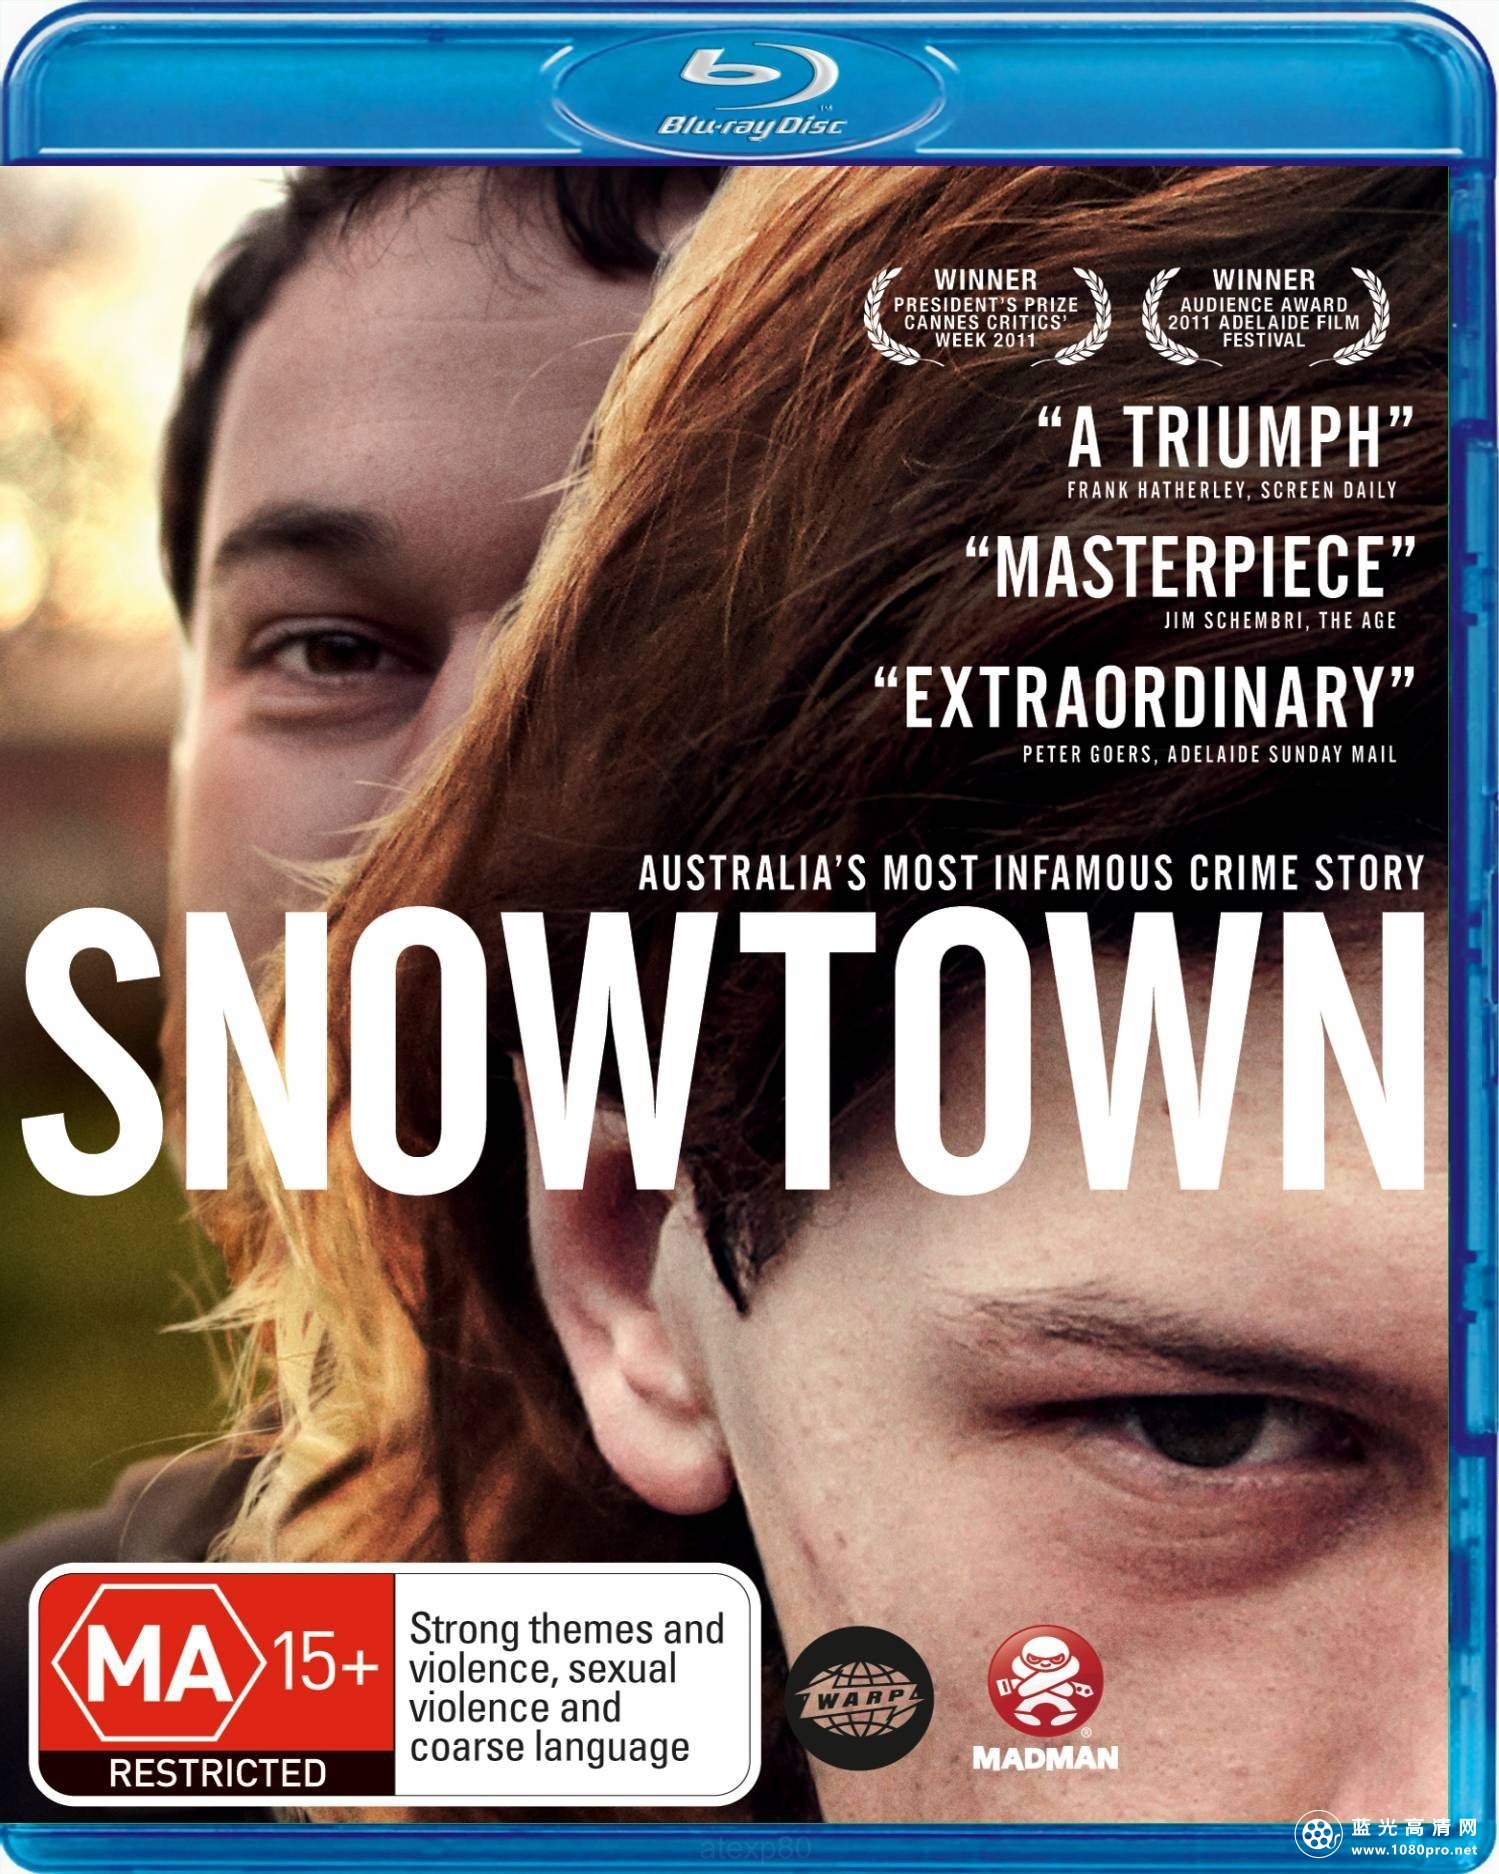 雪镇狂魔/血教育 The.Snowtown.Murders.2011.720p.BluRay.x264-aAF 4.37 GB-1.jpg